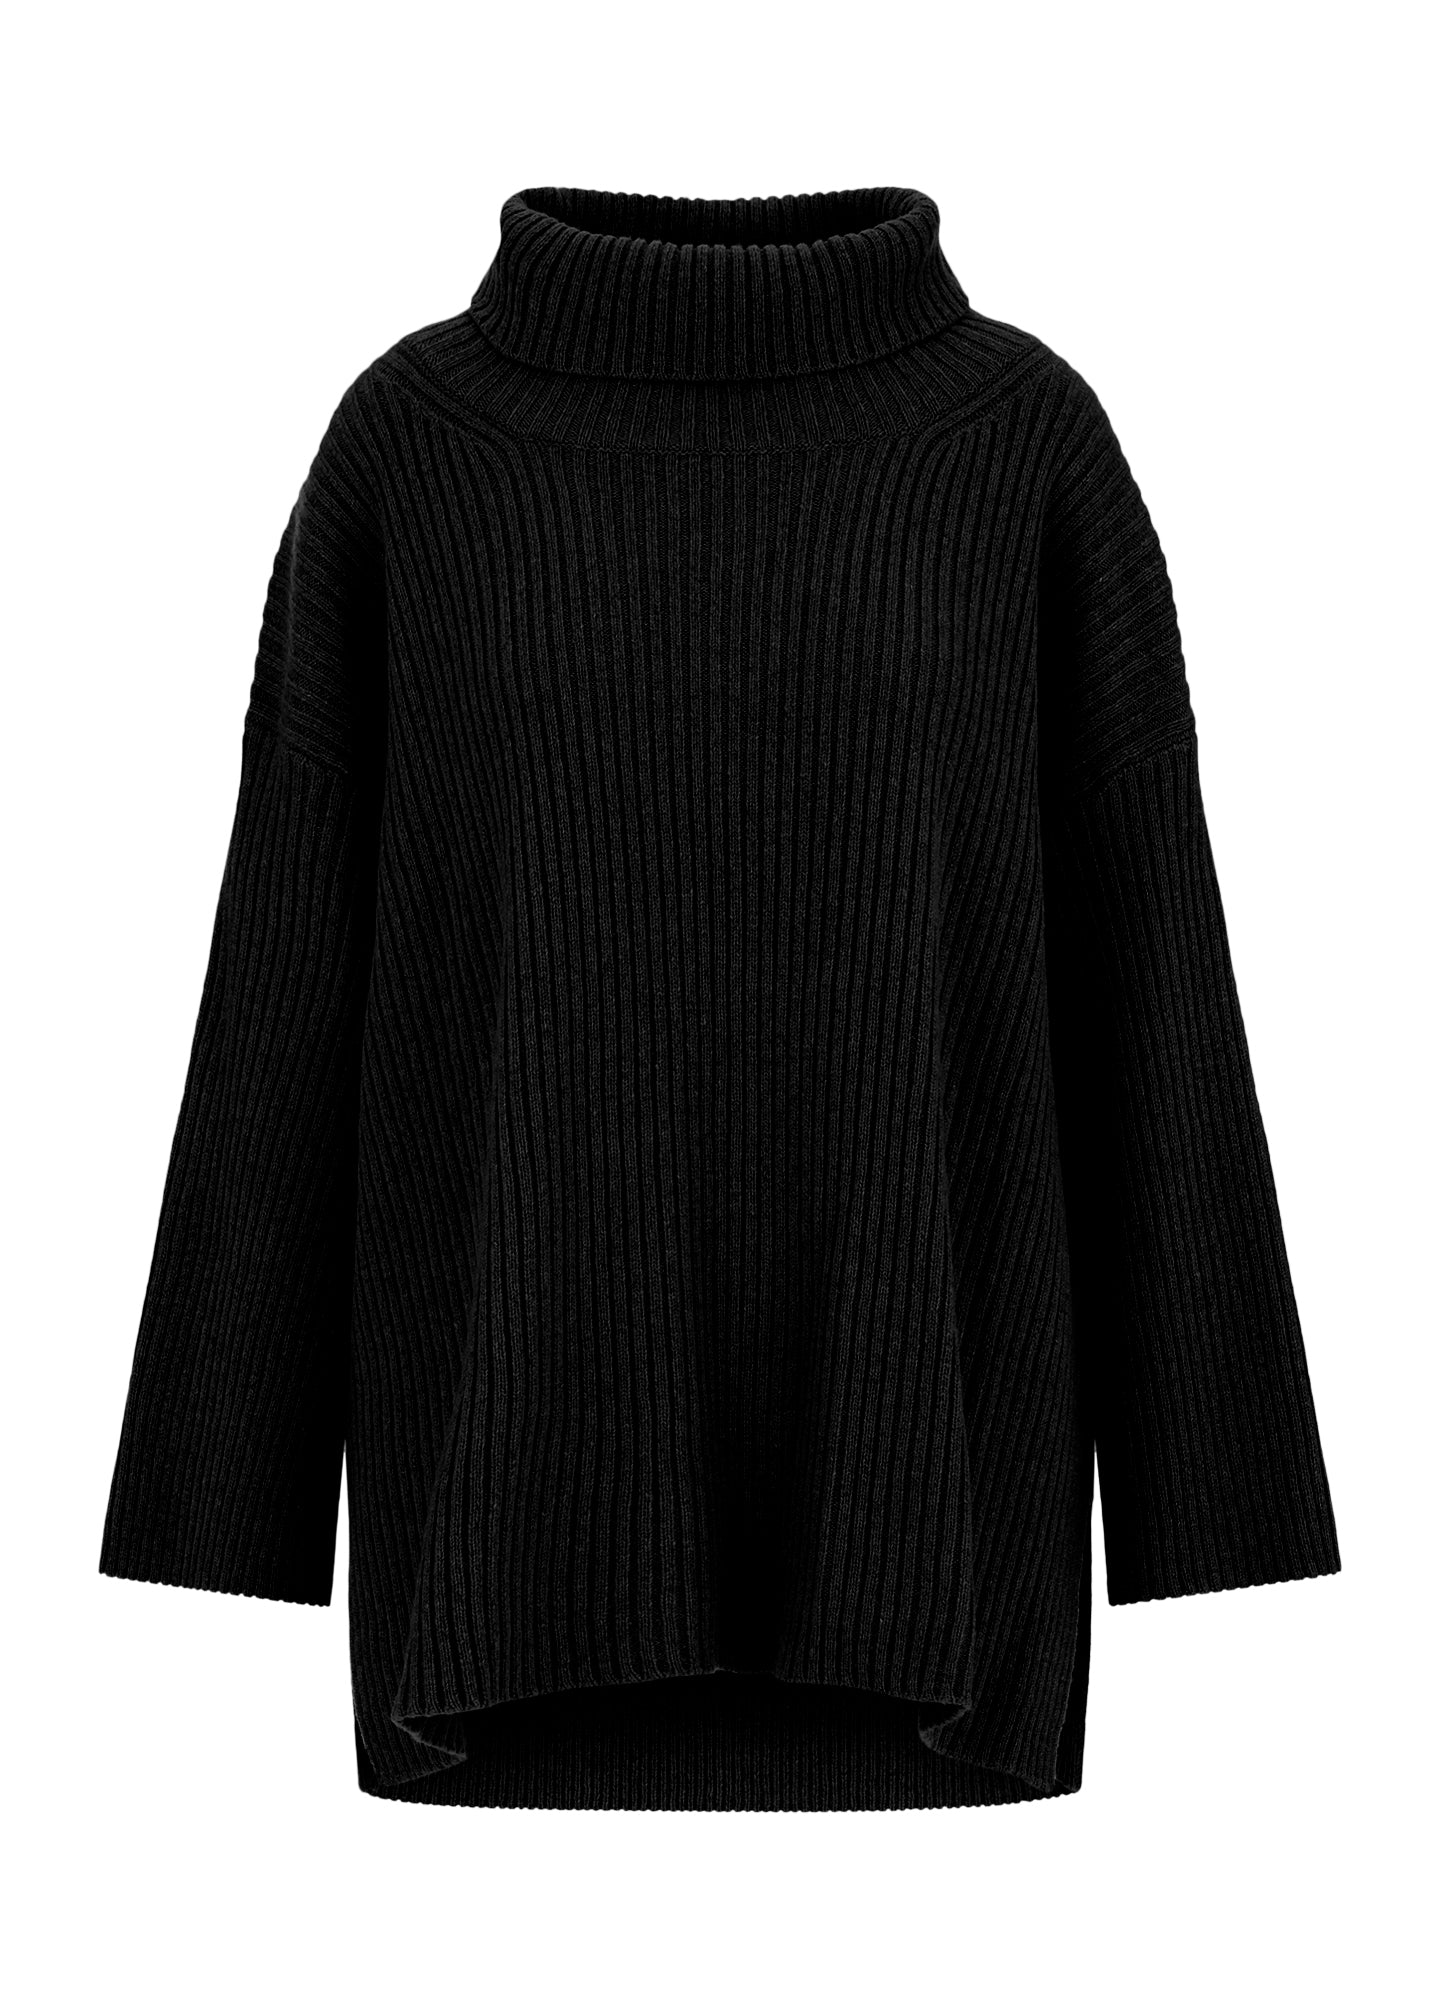 Designer cashmere oversized turtleneck jumper Full Black